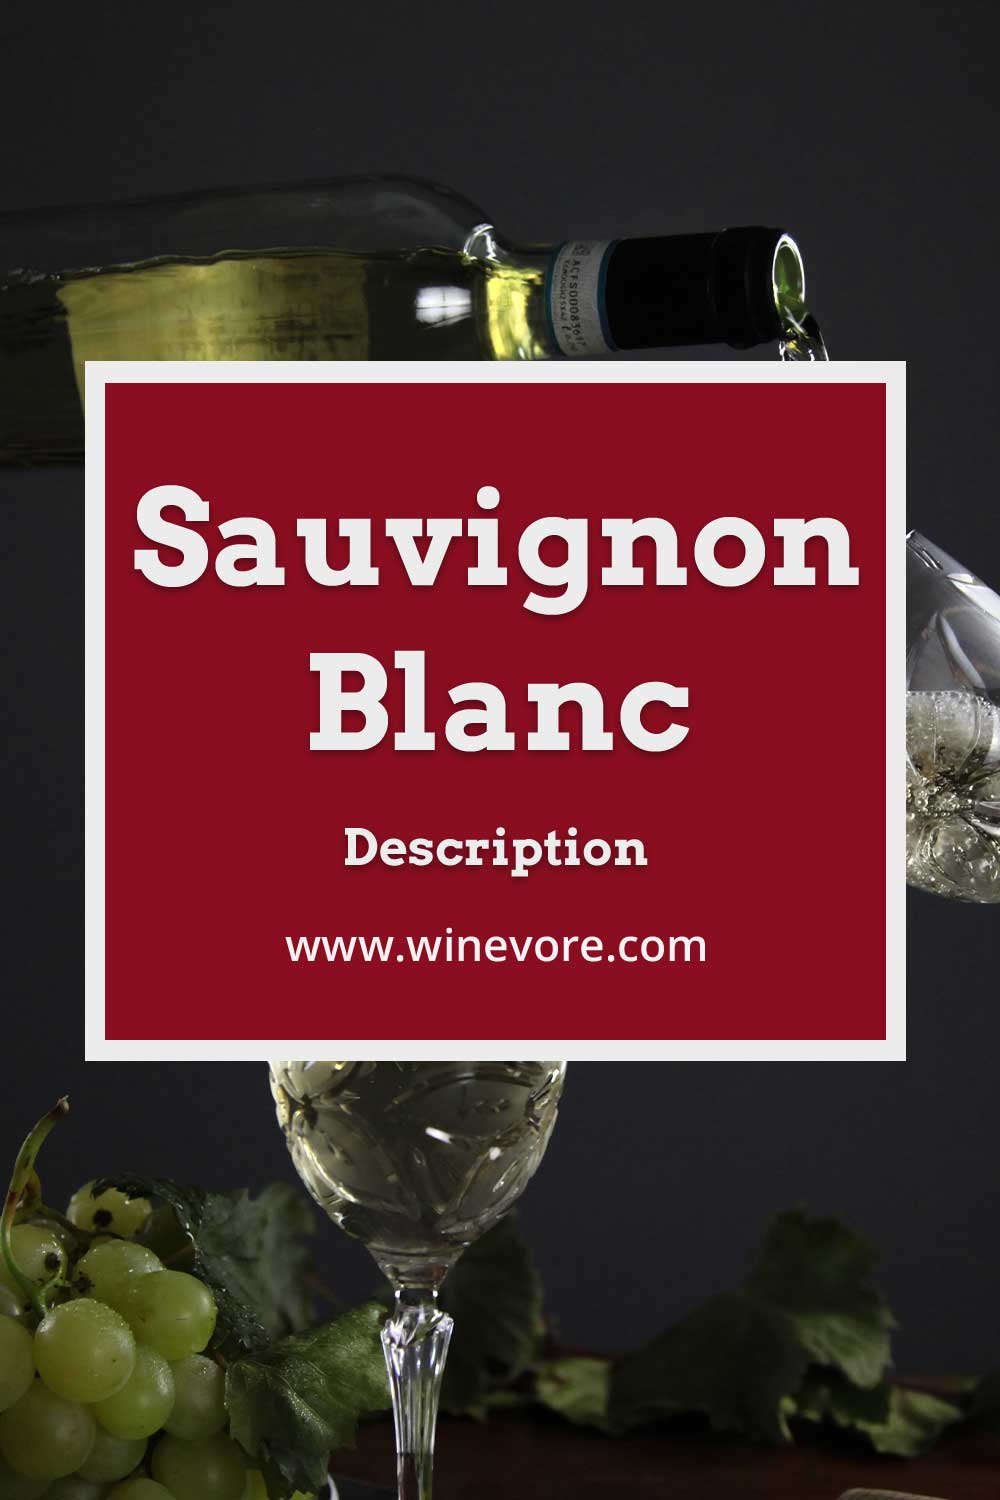 Pouring white wine into a glass - Sauvignon Blanc Description.